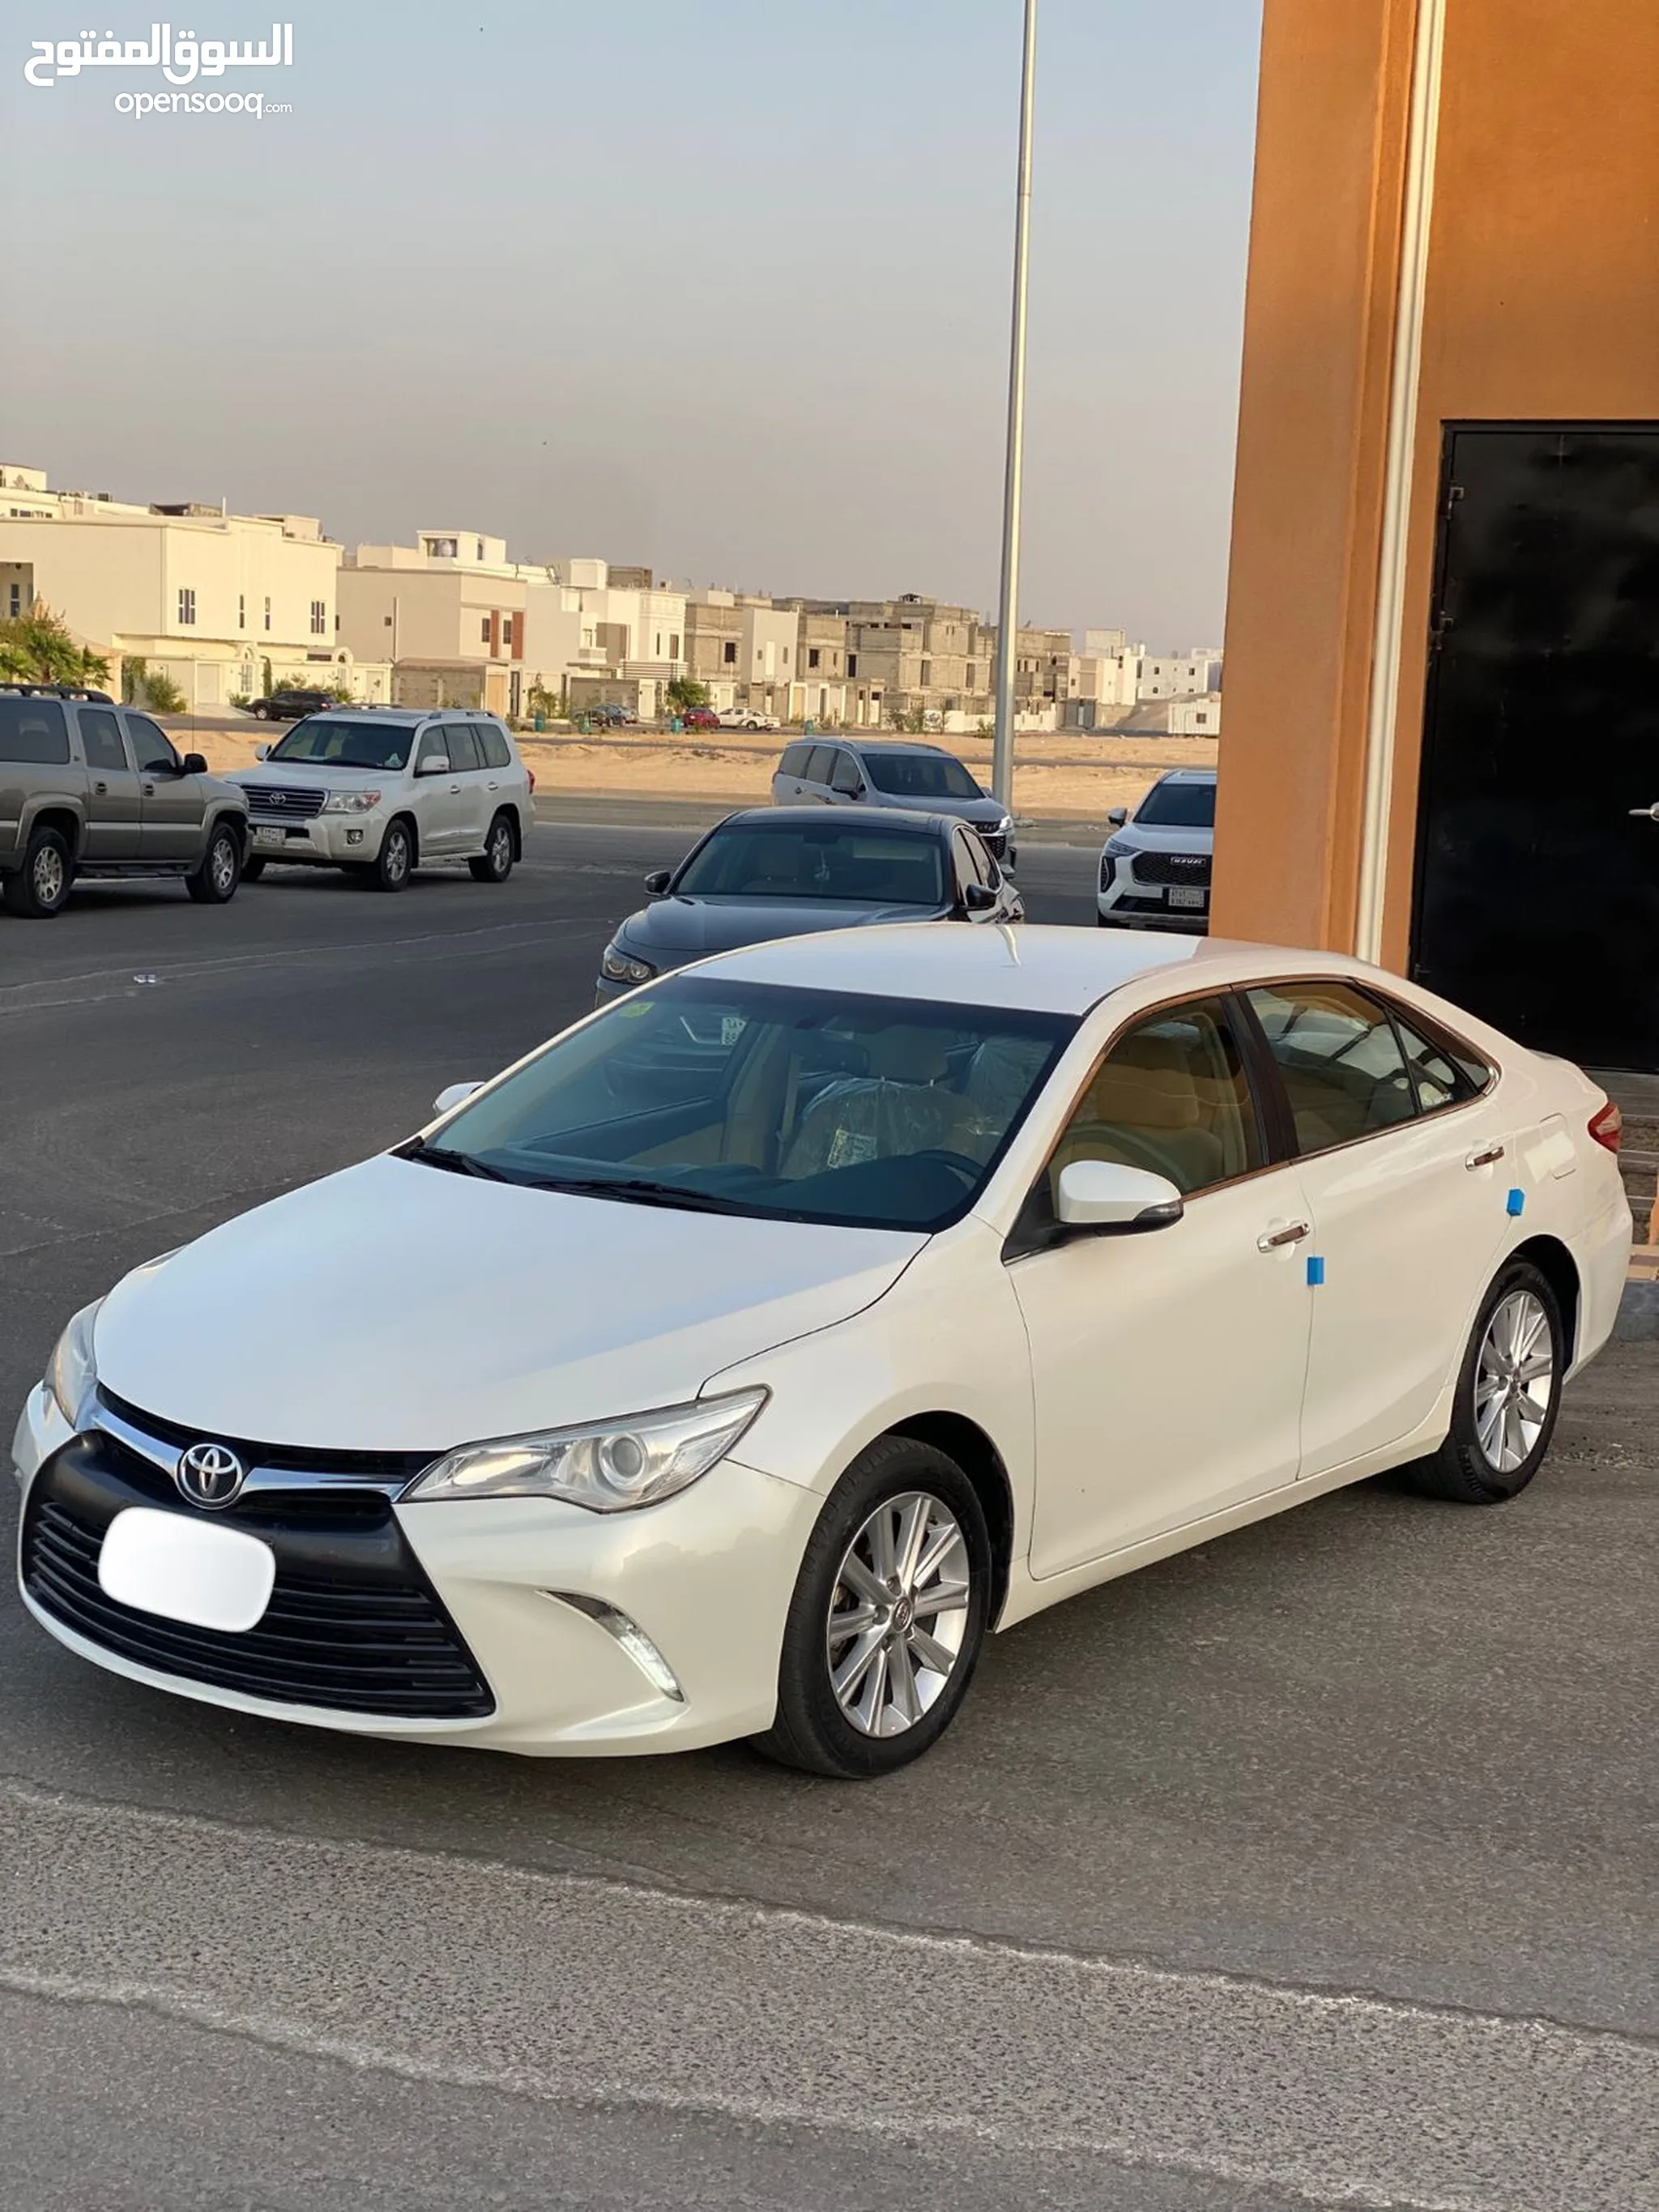 سيارات للبيع في السعودية - سيارات مستعملة وجديدة للبيع - أفضل الأسعار | السوق  المفتوح